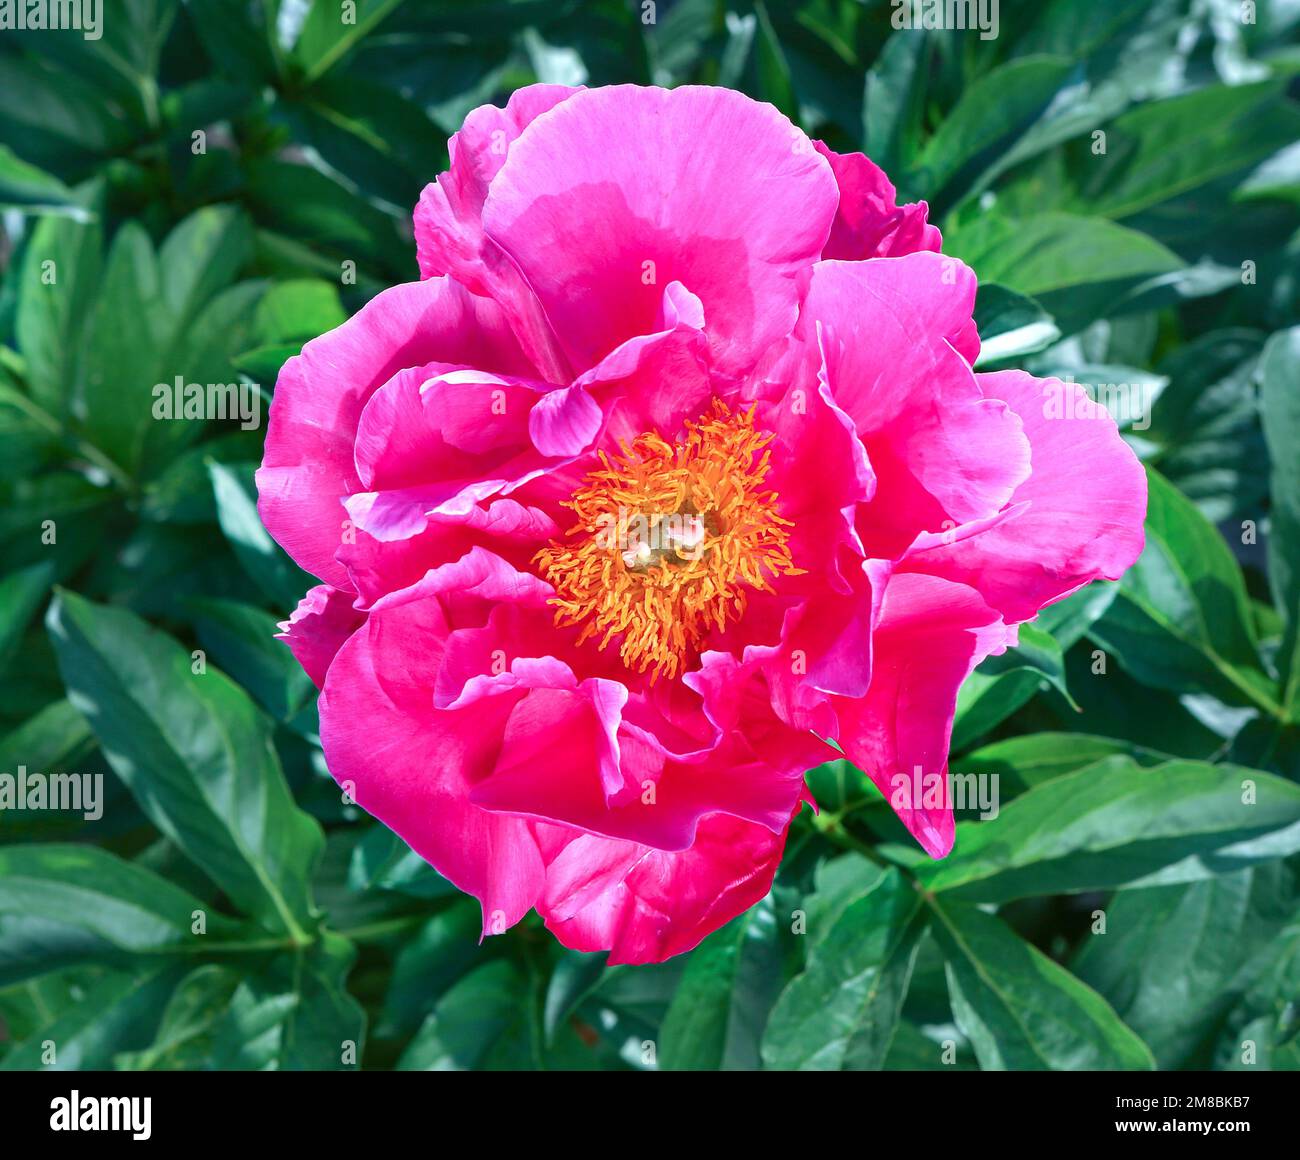 Pink-Blumen-Pfingstrosen mit grünen Blättern im Hintergrund. Pfingstrosen-Garten. Stockfoto